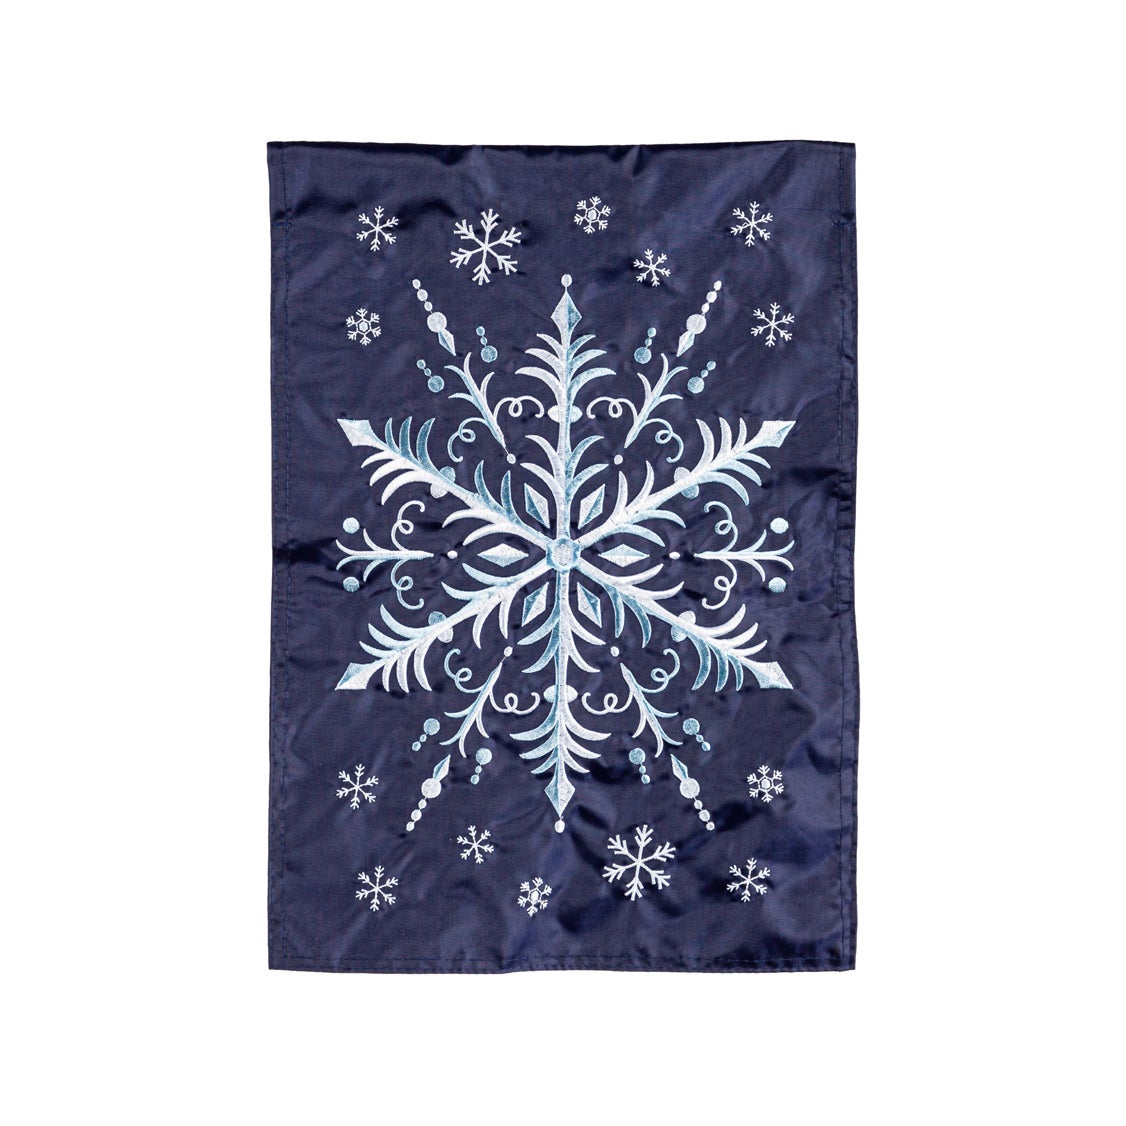 Snowflake Applique Garden Flag